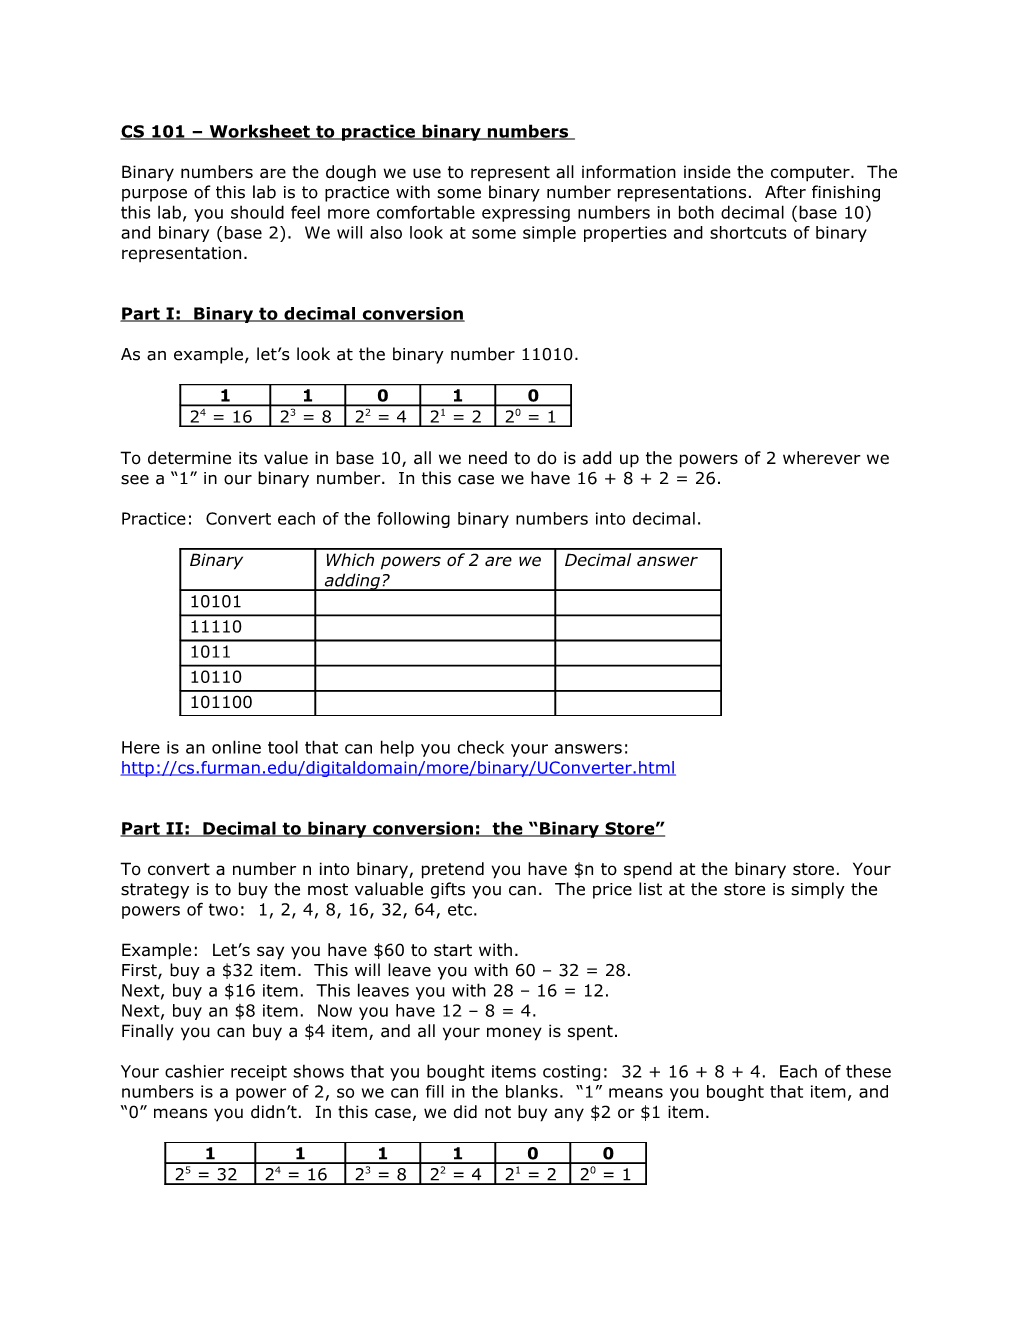 CS 101 Worksheet to Practice Binary Numbers